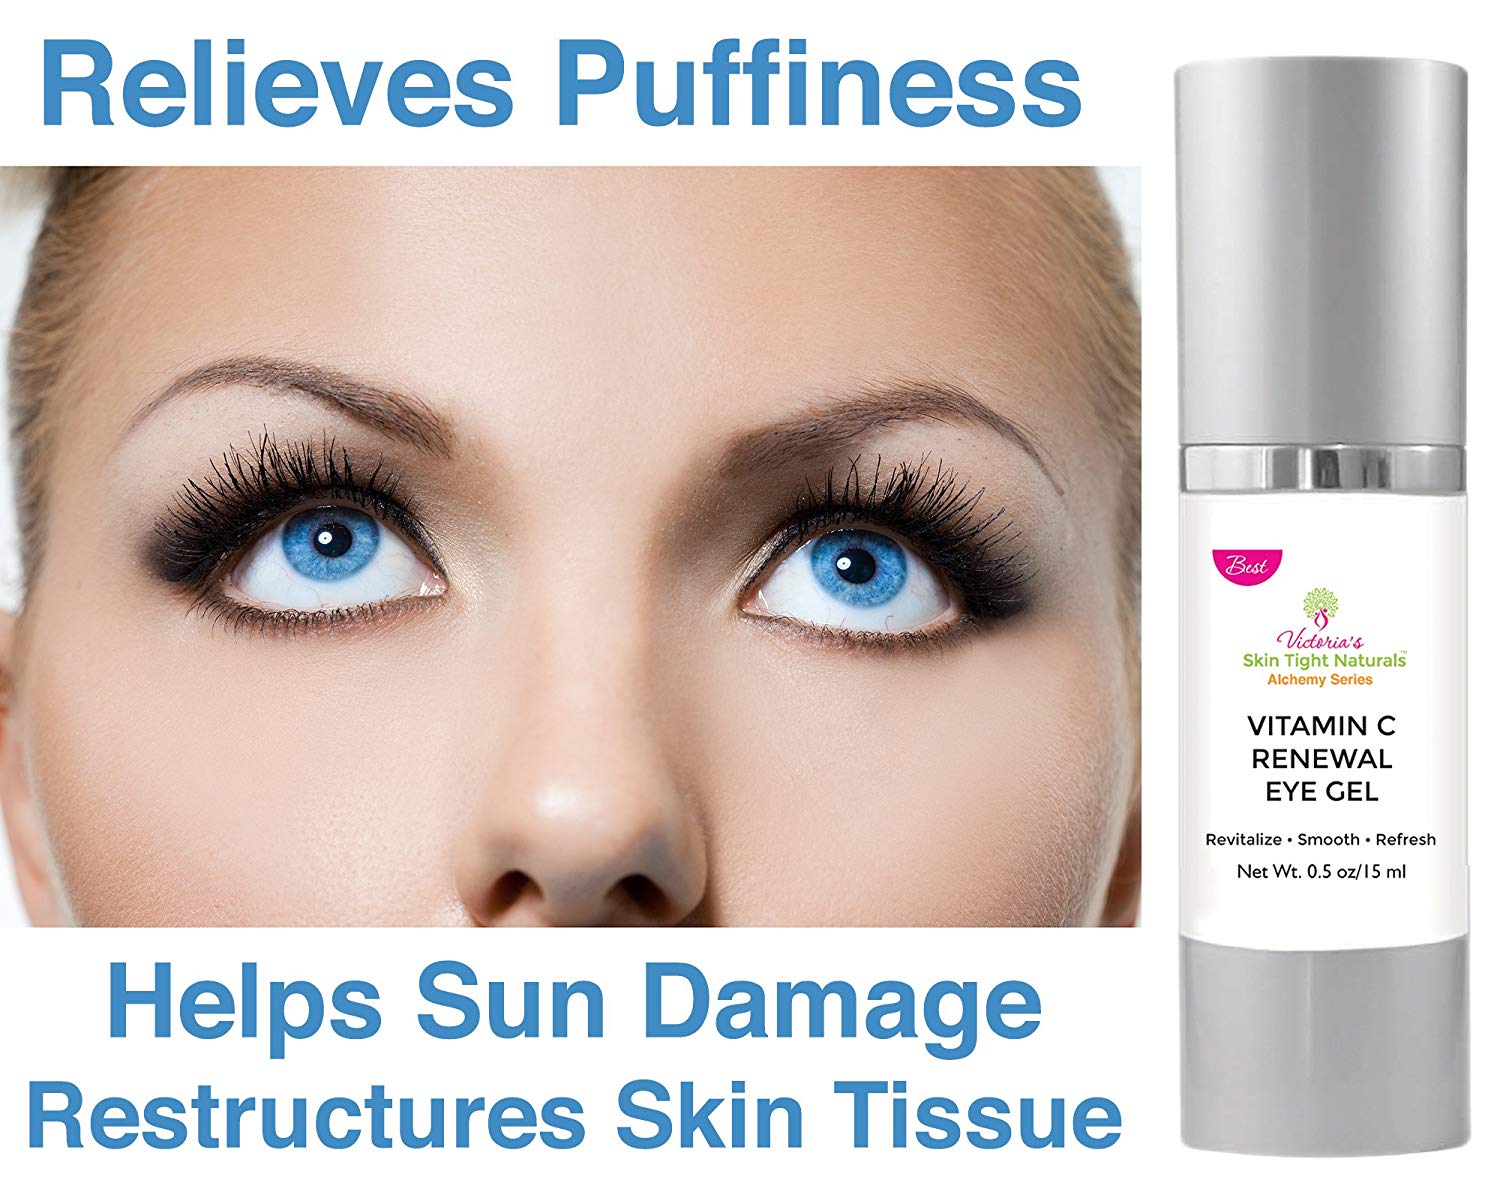 Best Eye Cream For Wrinkles